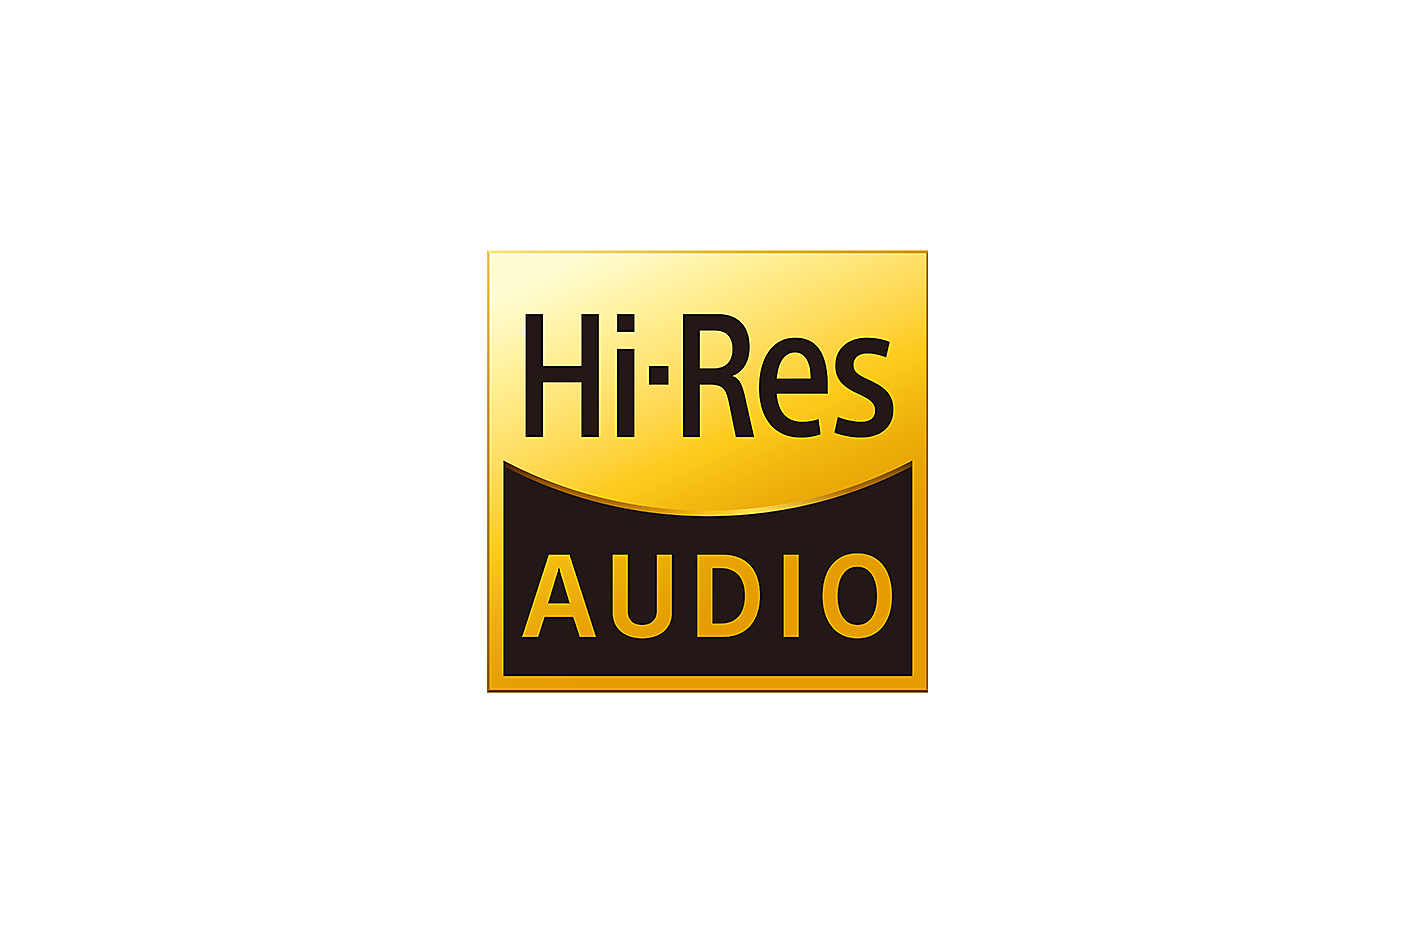 Logo van Hi-Res Audio